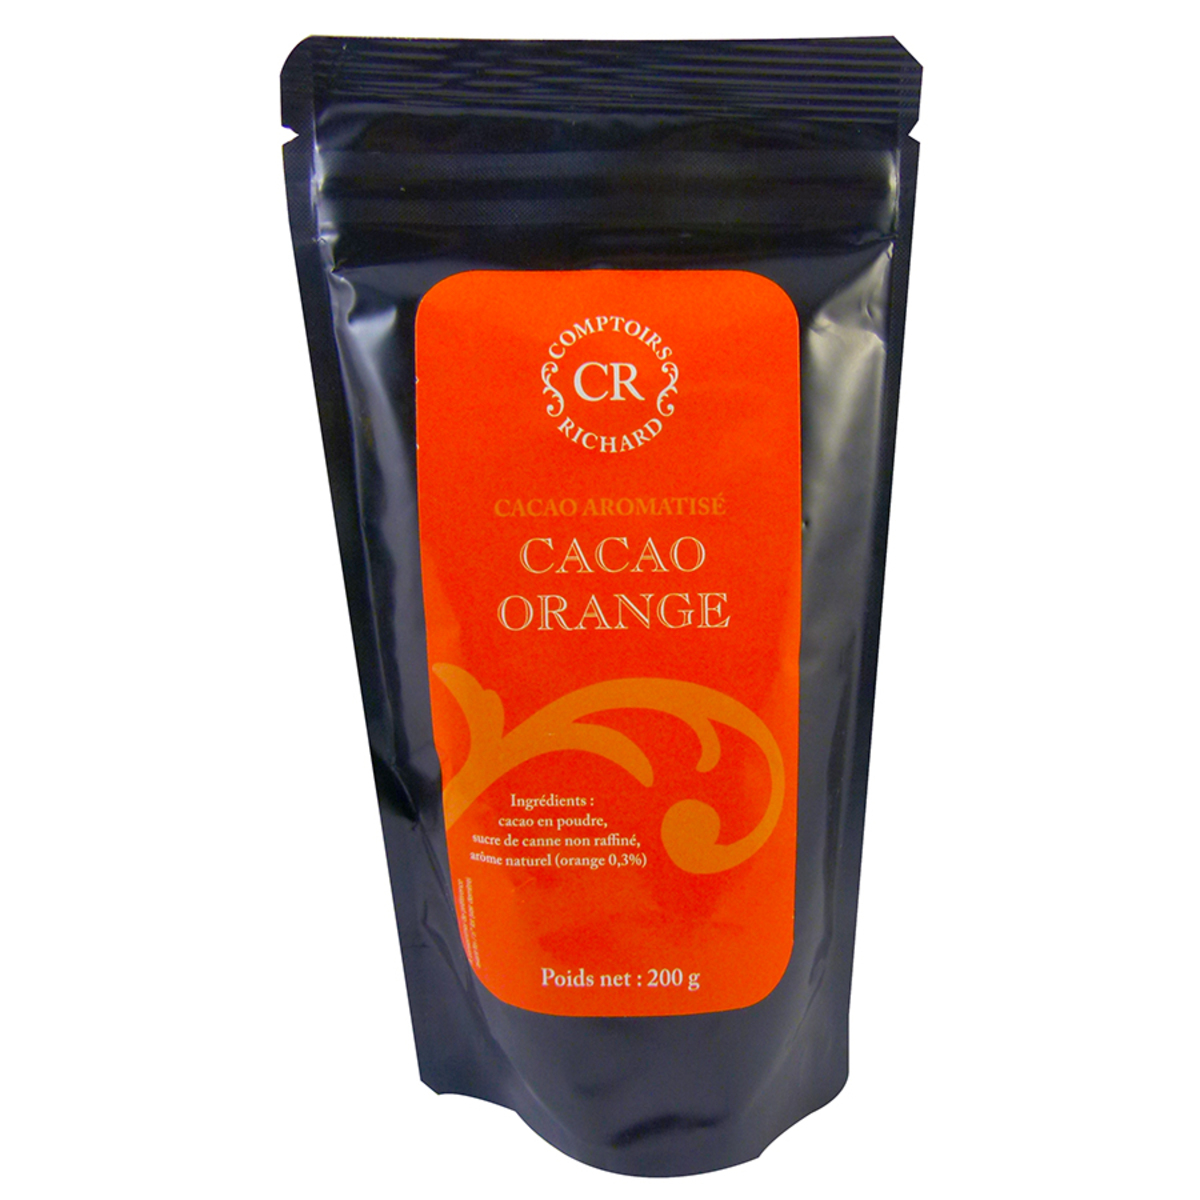 Cacao poudre aromatisé à l'orange Comptoirs Richard 200g